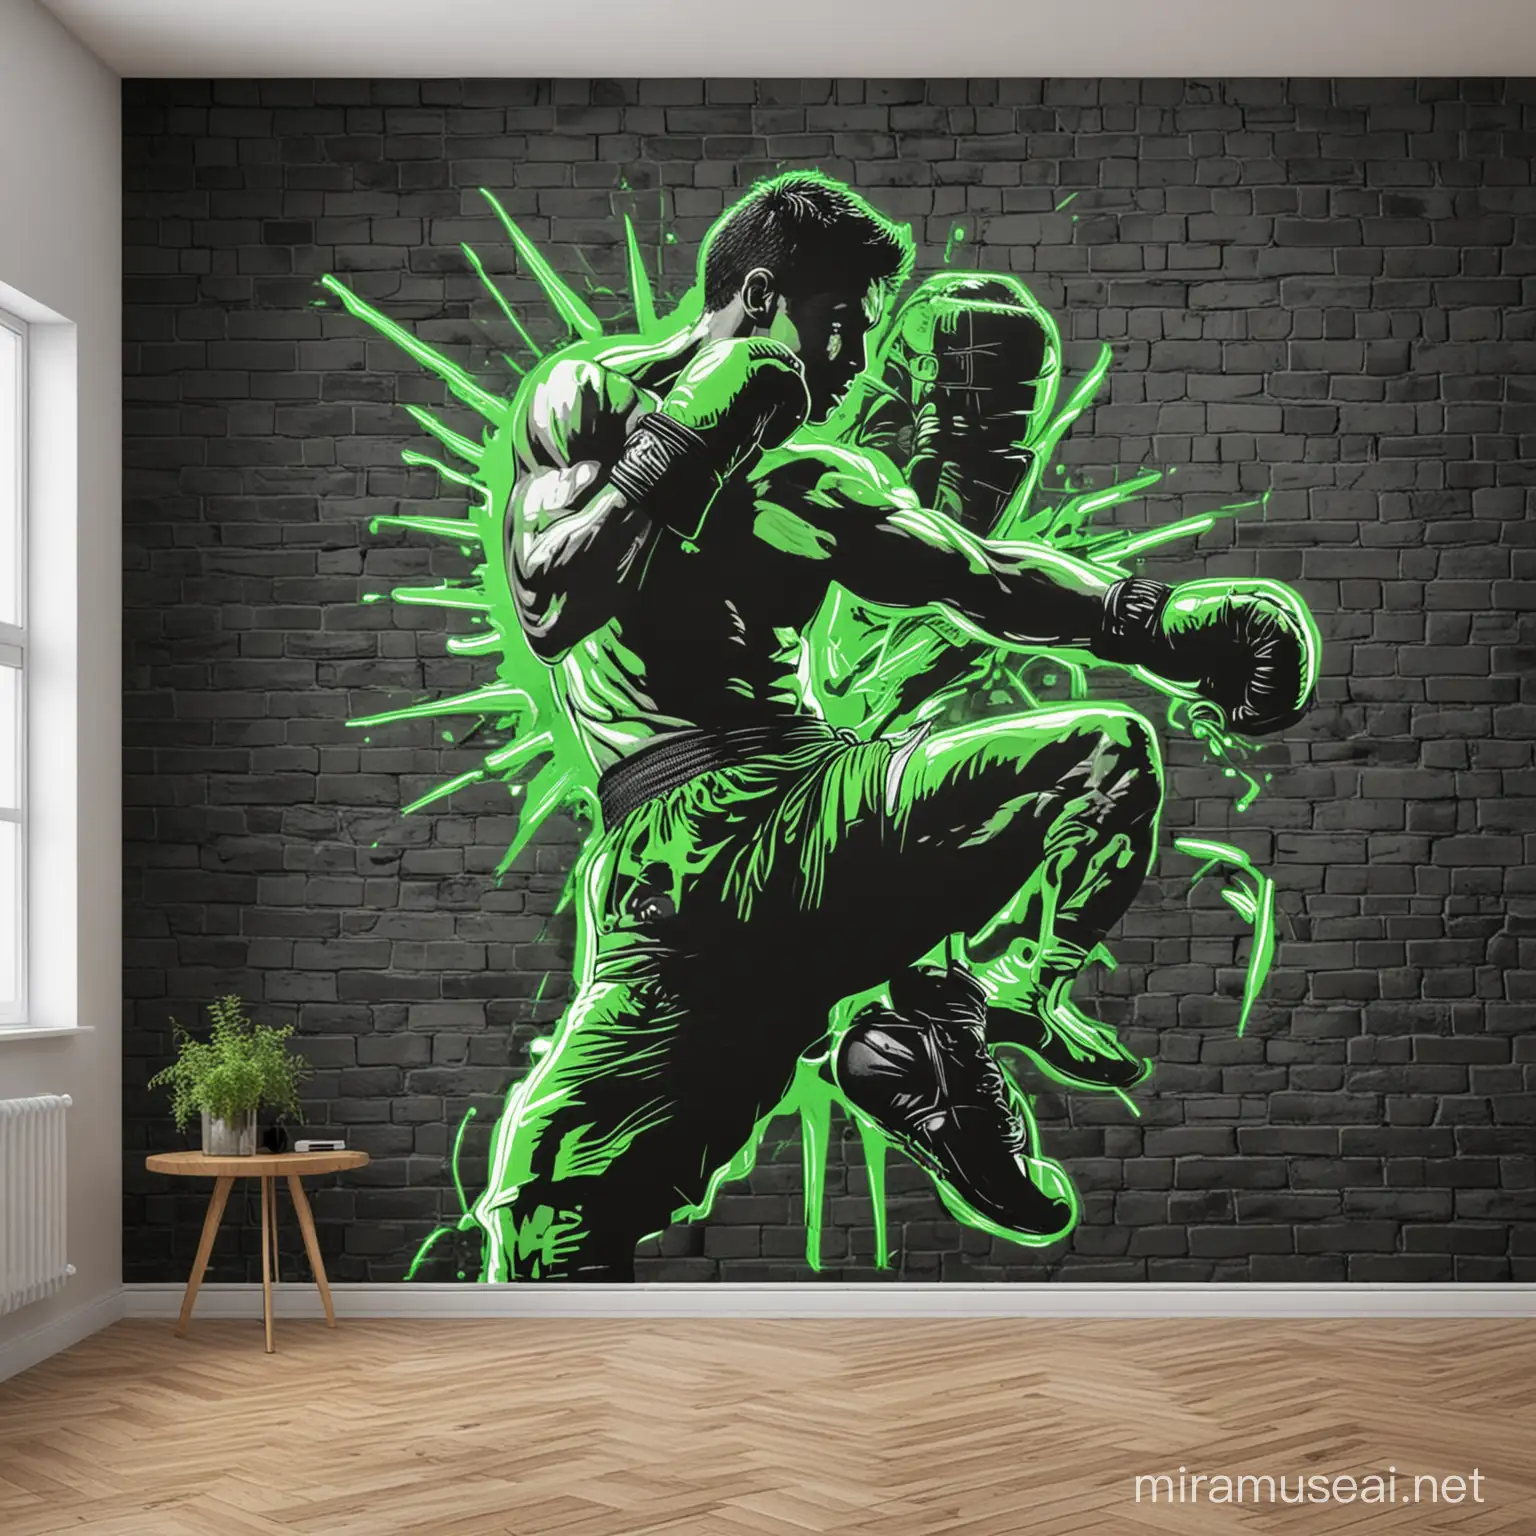 Neon Green Kickboxing Action Mural